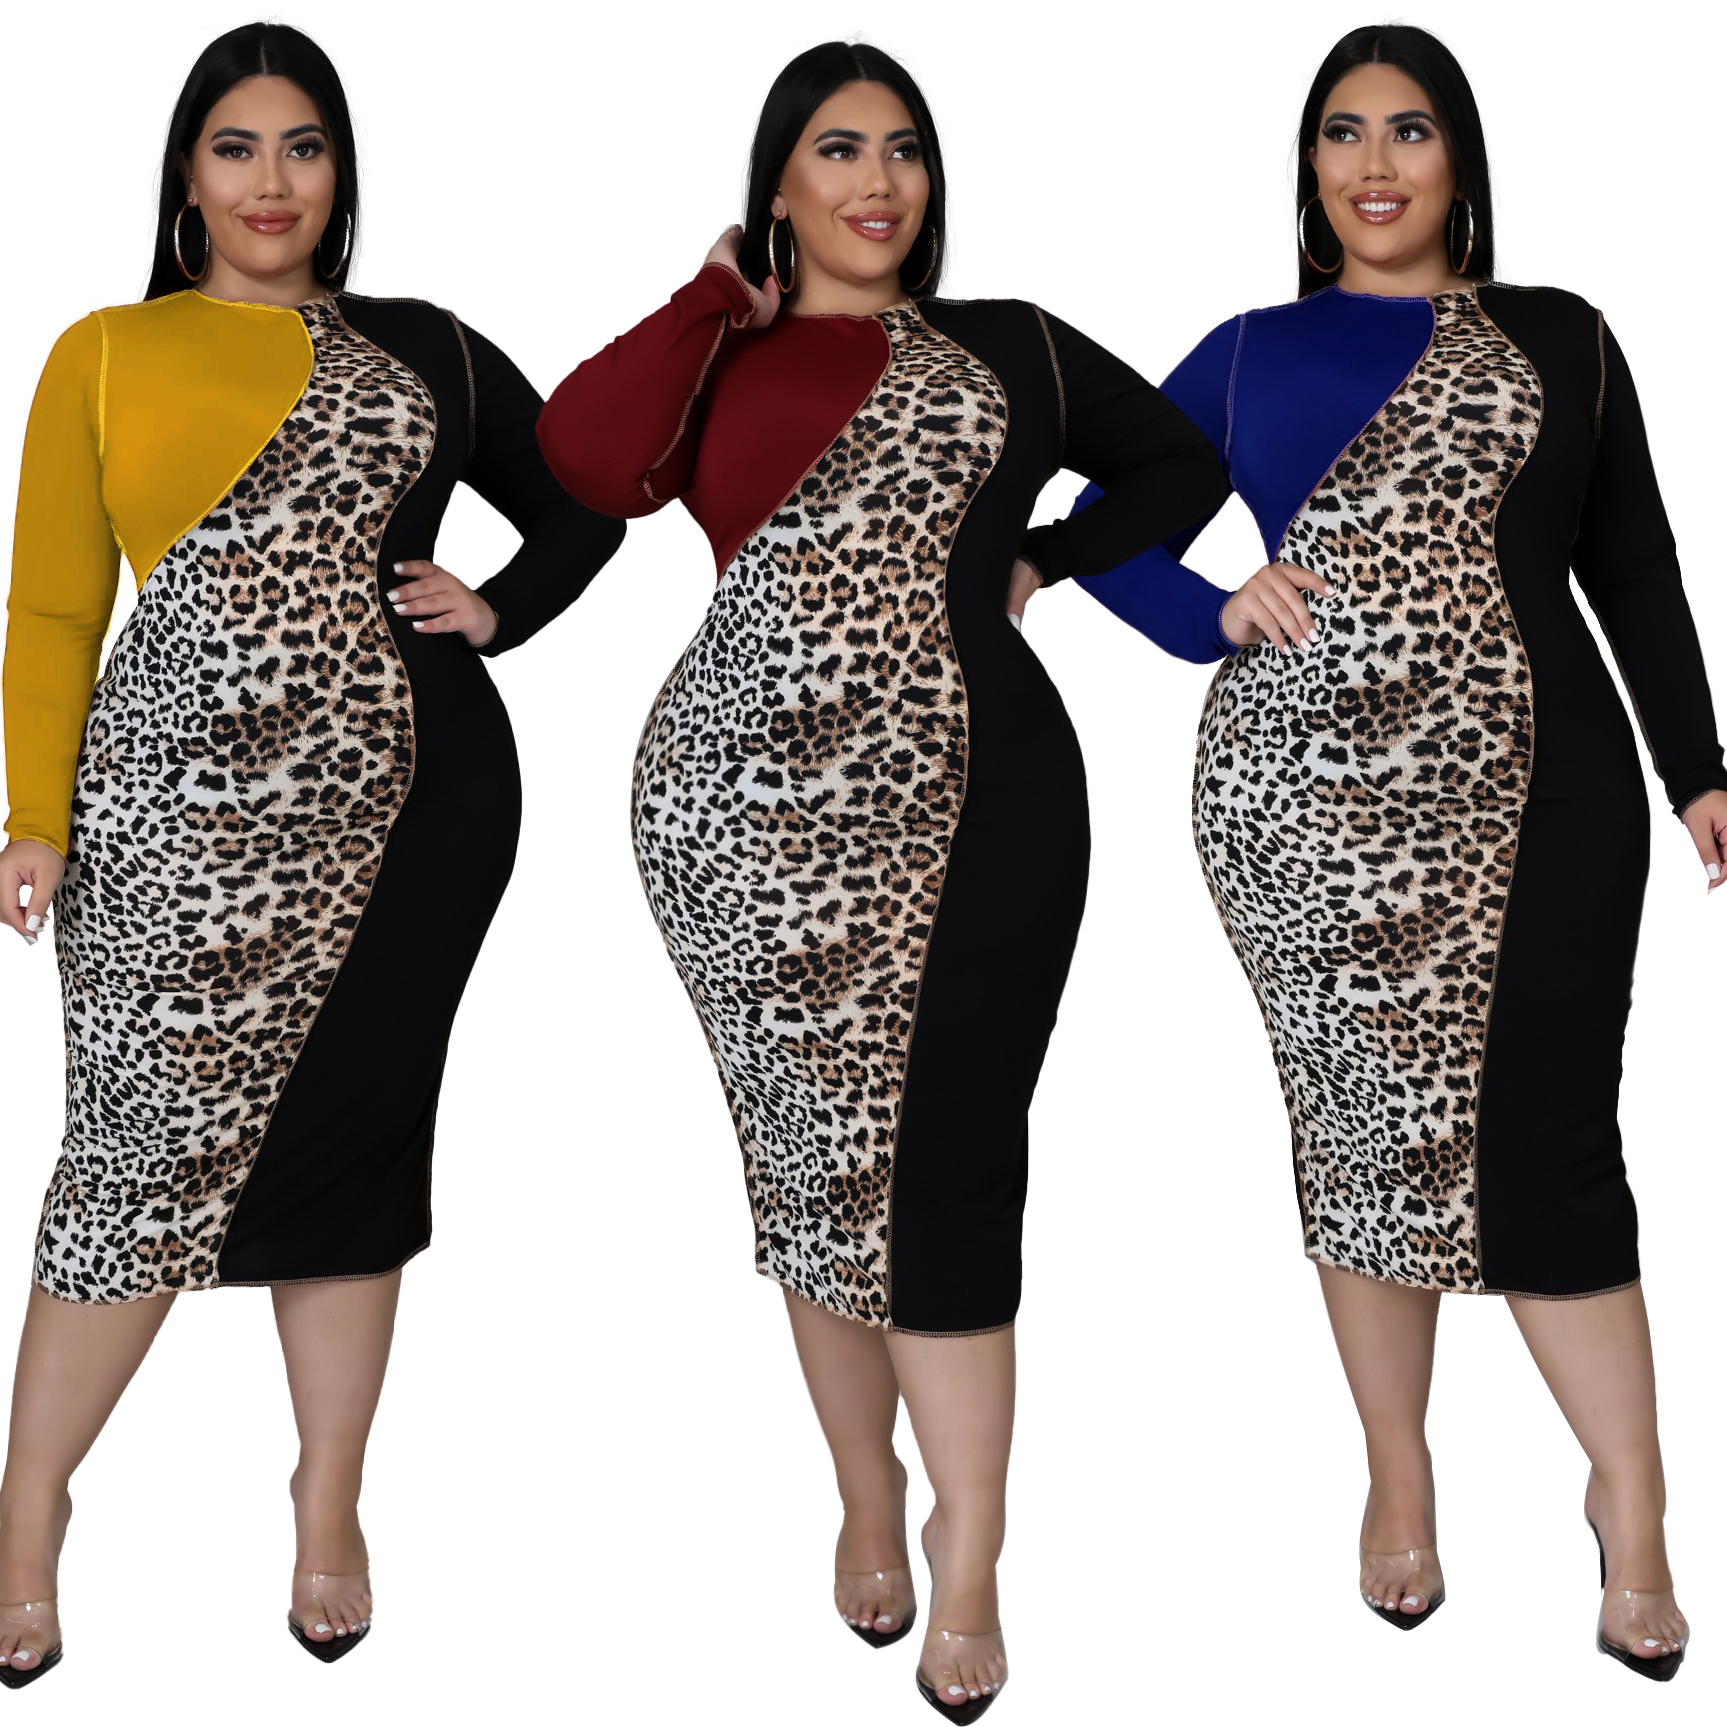 US$ 7.94 - Large women's leopard print color blocking fat woman dress ...